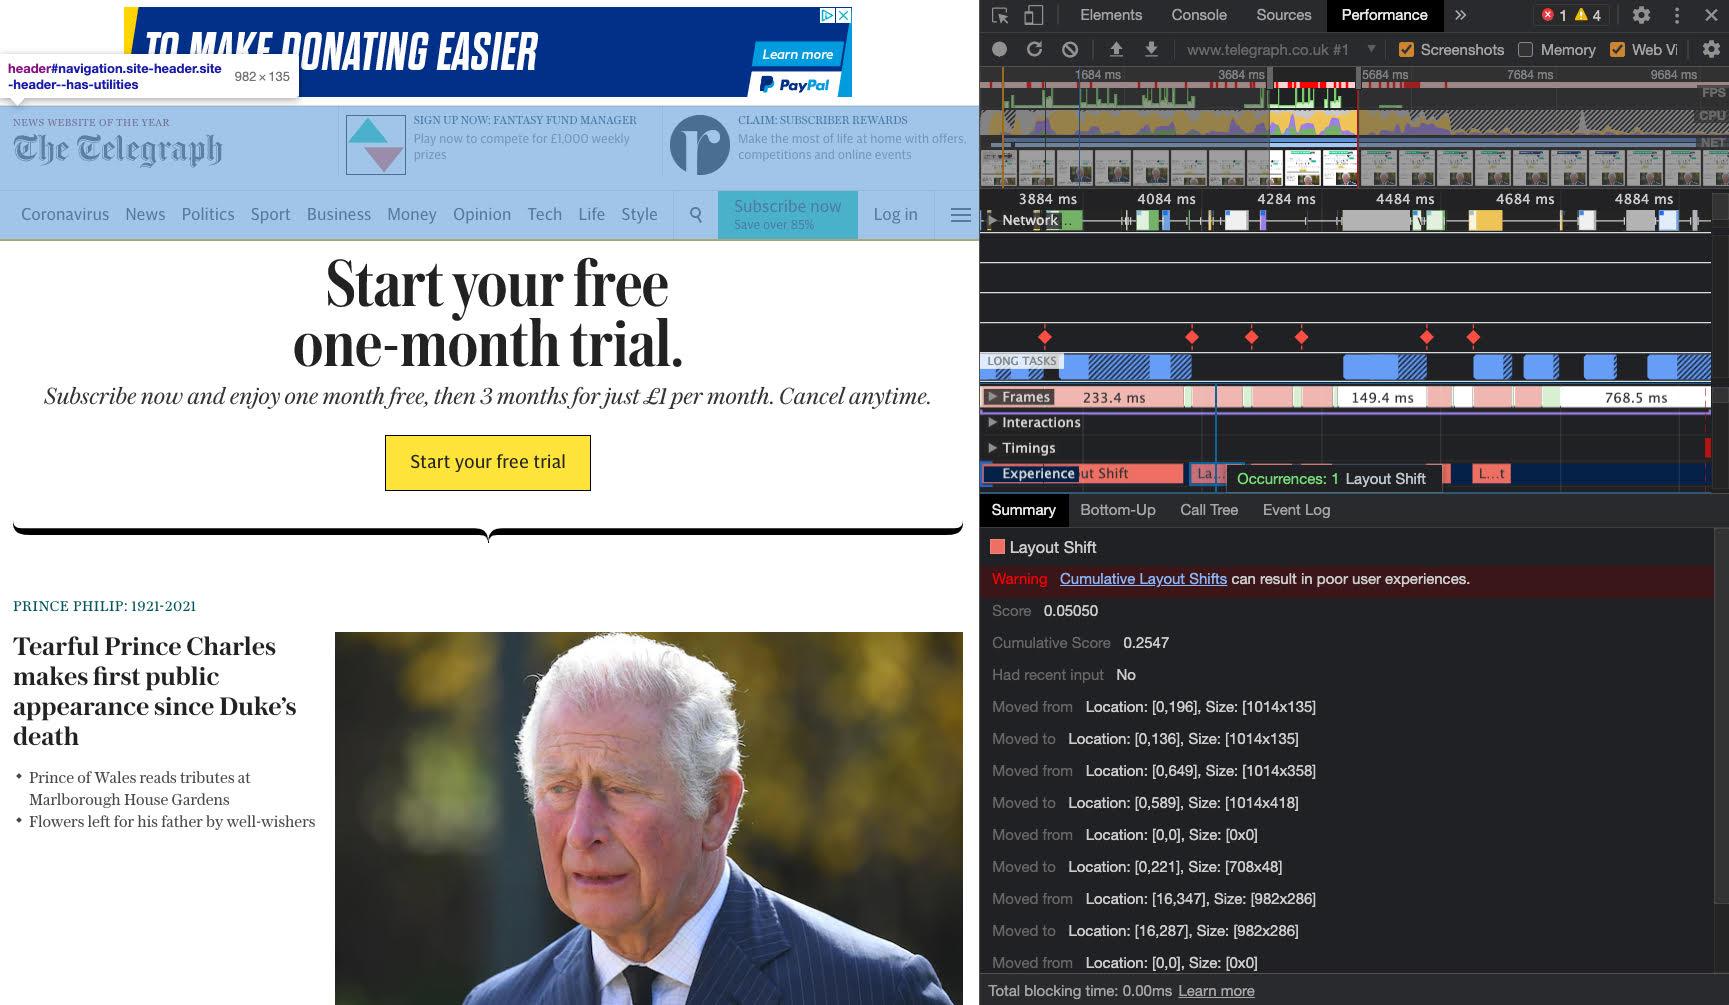 La página principal de Telegraph con un anuncio en el encabezado, destacado con una superposición azul.